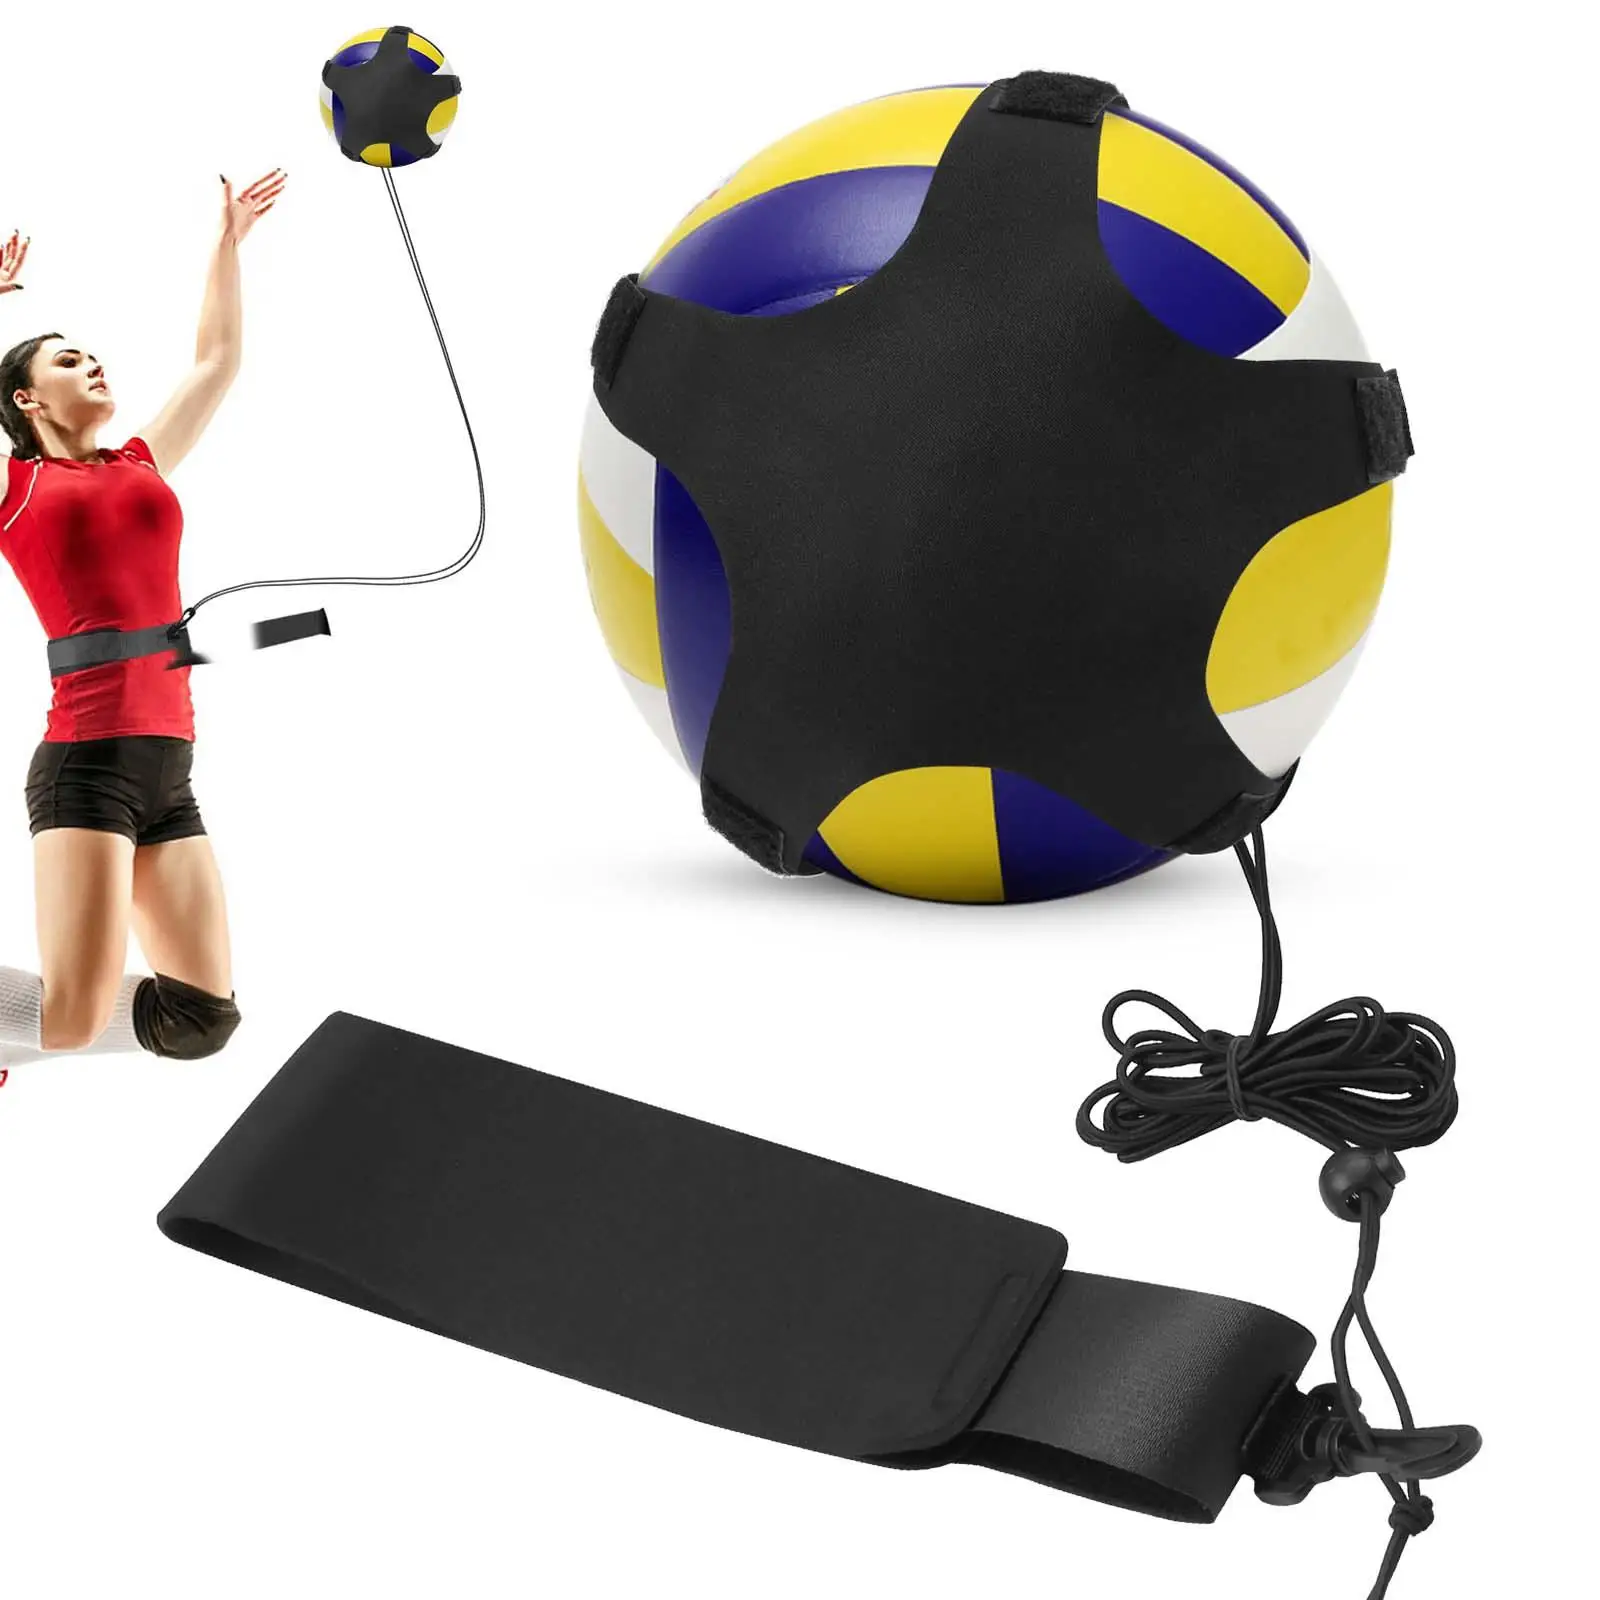 Волейбольное тренировочное оборудование, тренажер премиум-класса, идеально подходит для начинающих, практикующих подачу, установку и подсечку.